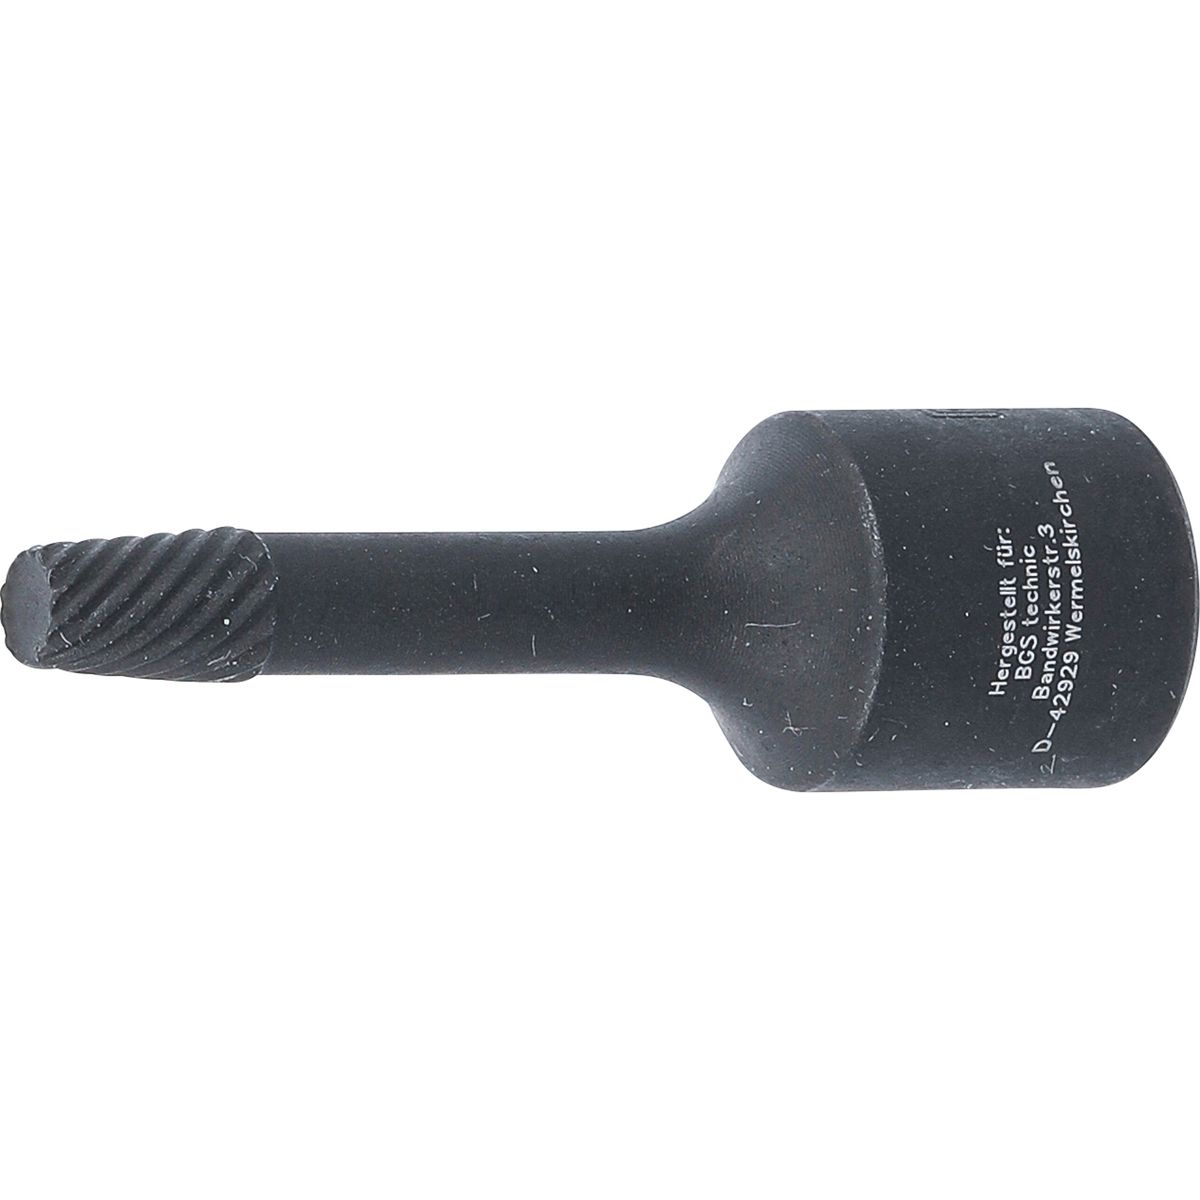 Spiral-Profil-Steckschlüssel-Einsatz / Schraubenausdreher | Antrieb Innenvierkant 10 mm (3/8") | 6 mm